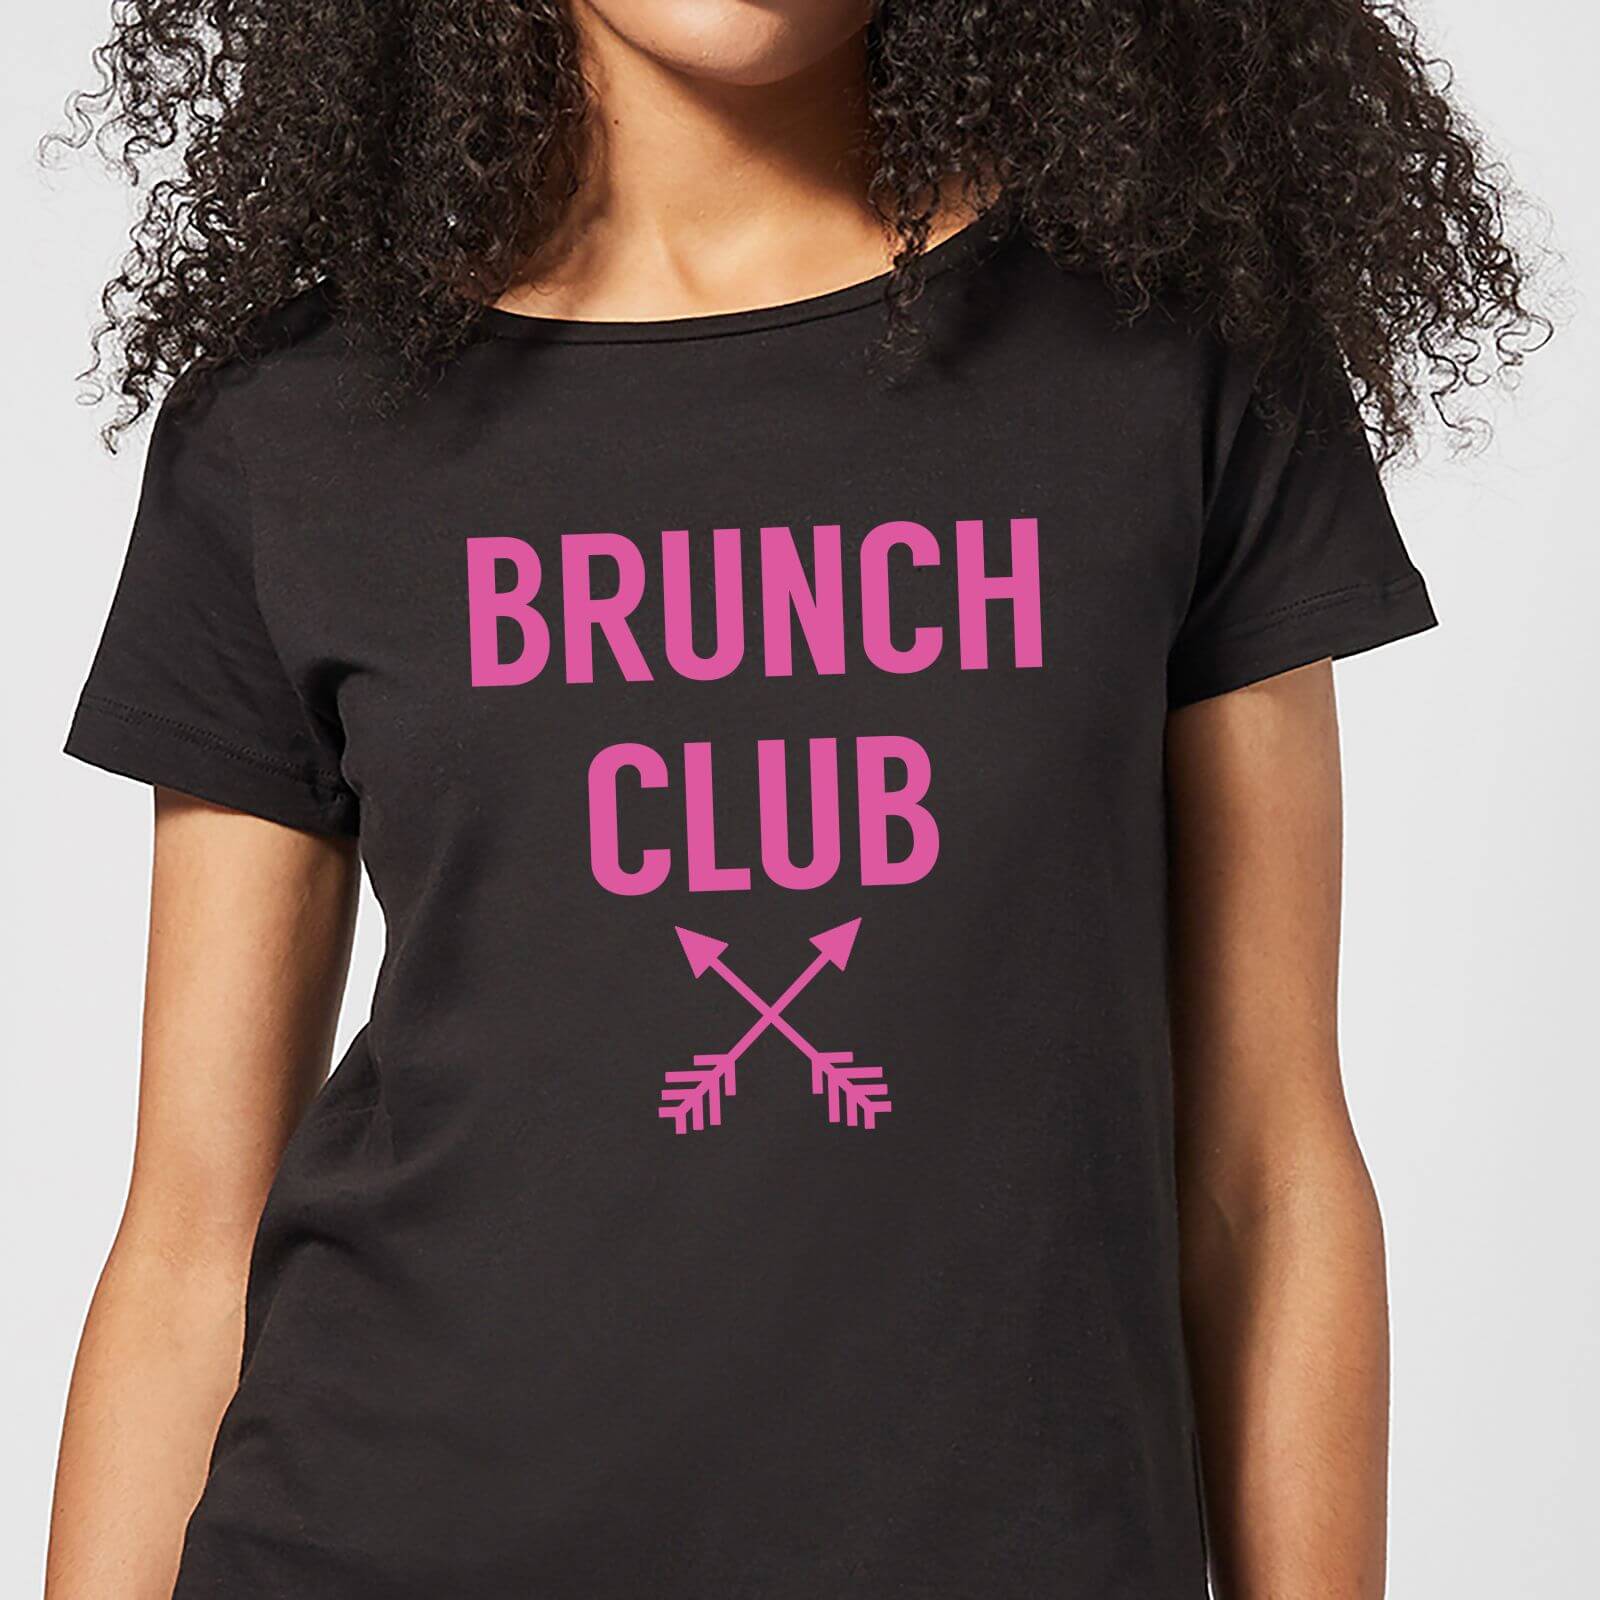 Brunch Club Women's T-Shirt - Black - 3XL - Black